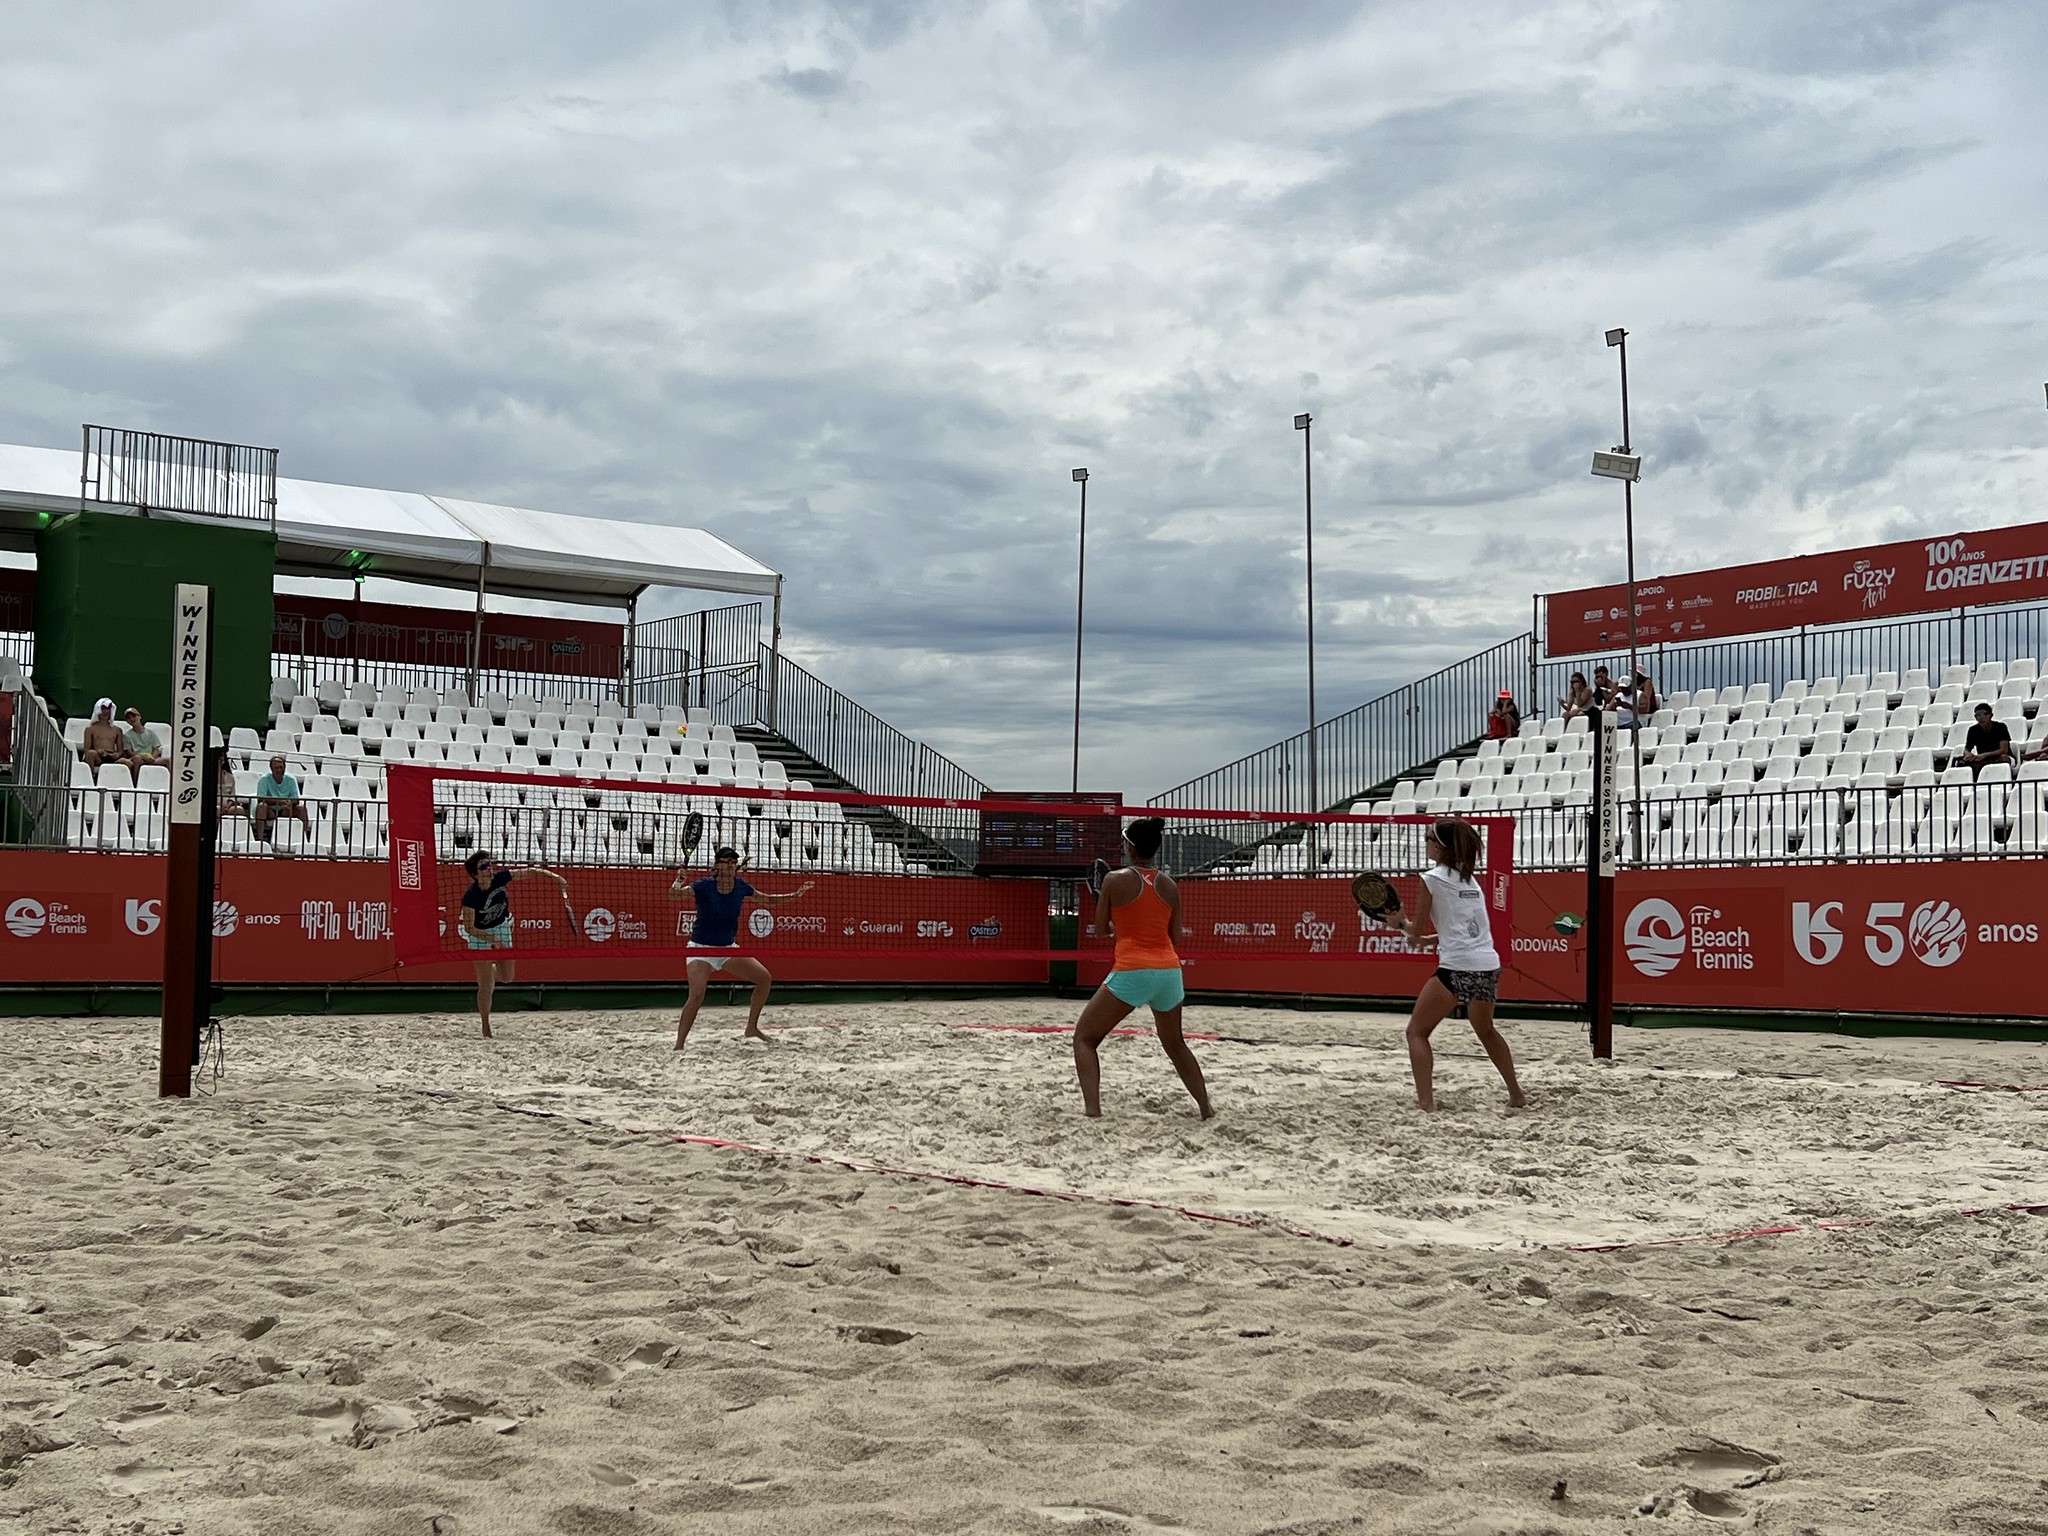 Arena Verão + se despede de Guarujá com finais de Beach Tennis no domingo (21)